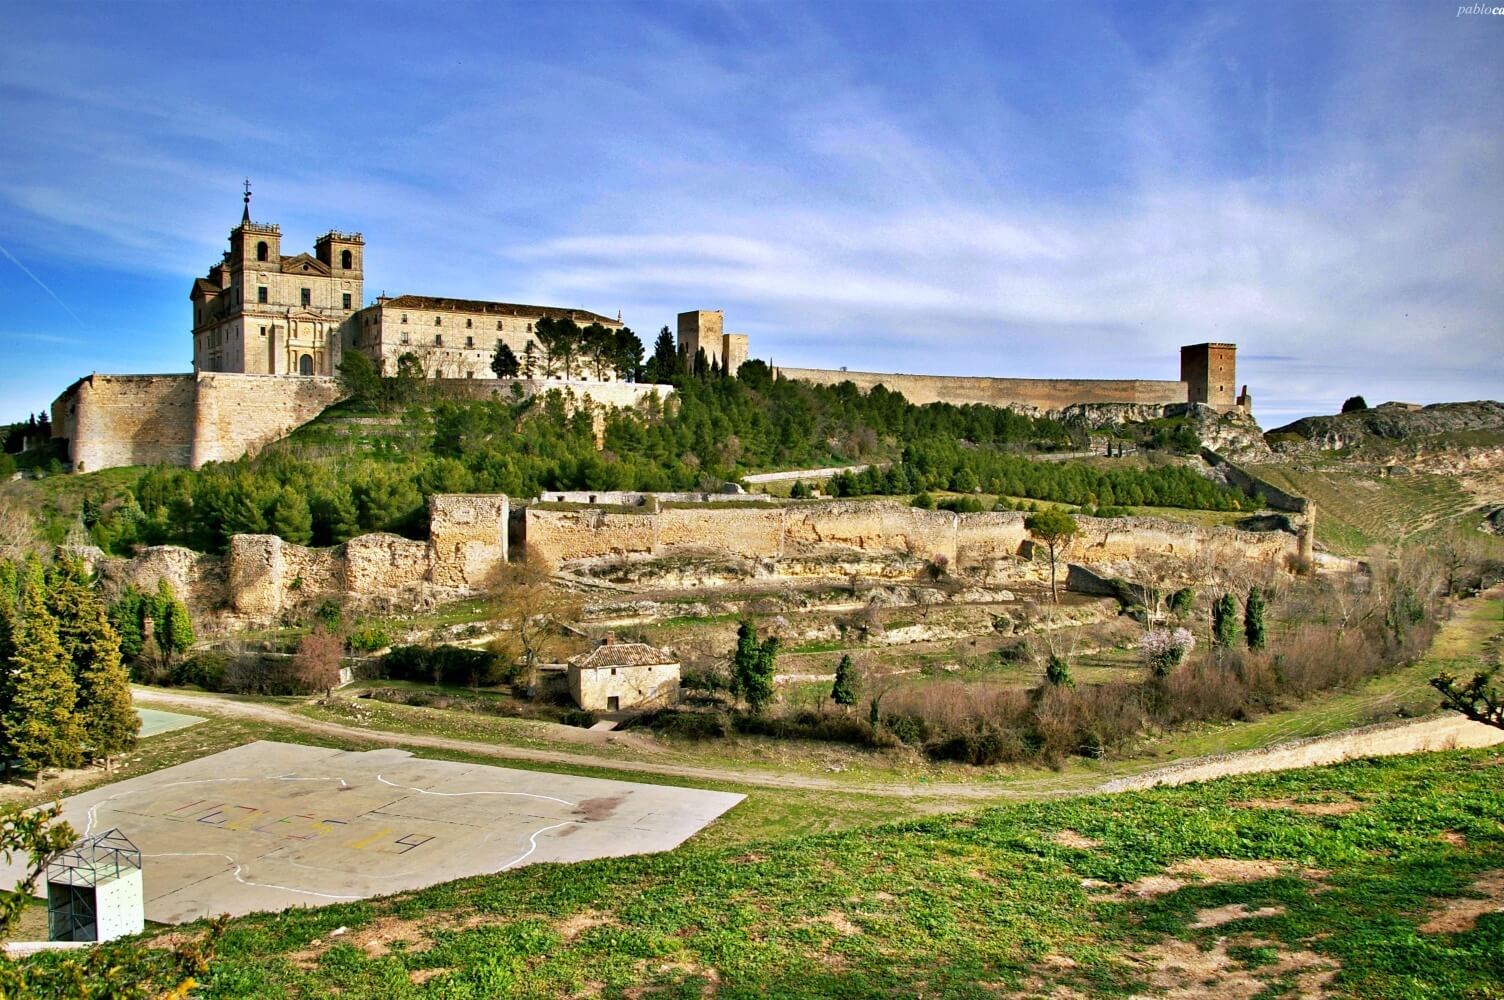 Castle of Uclés